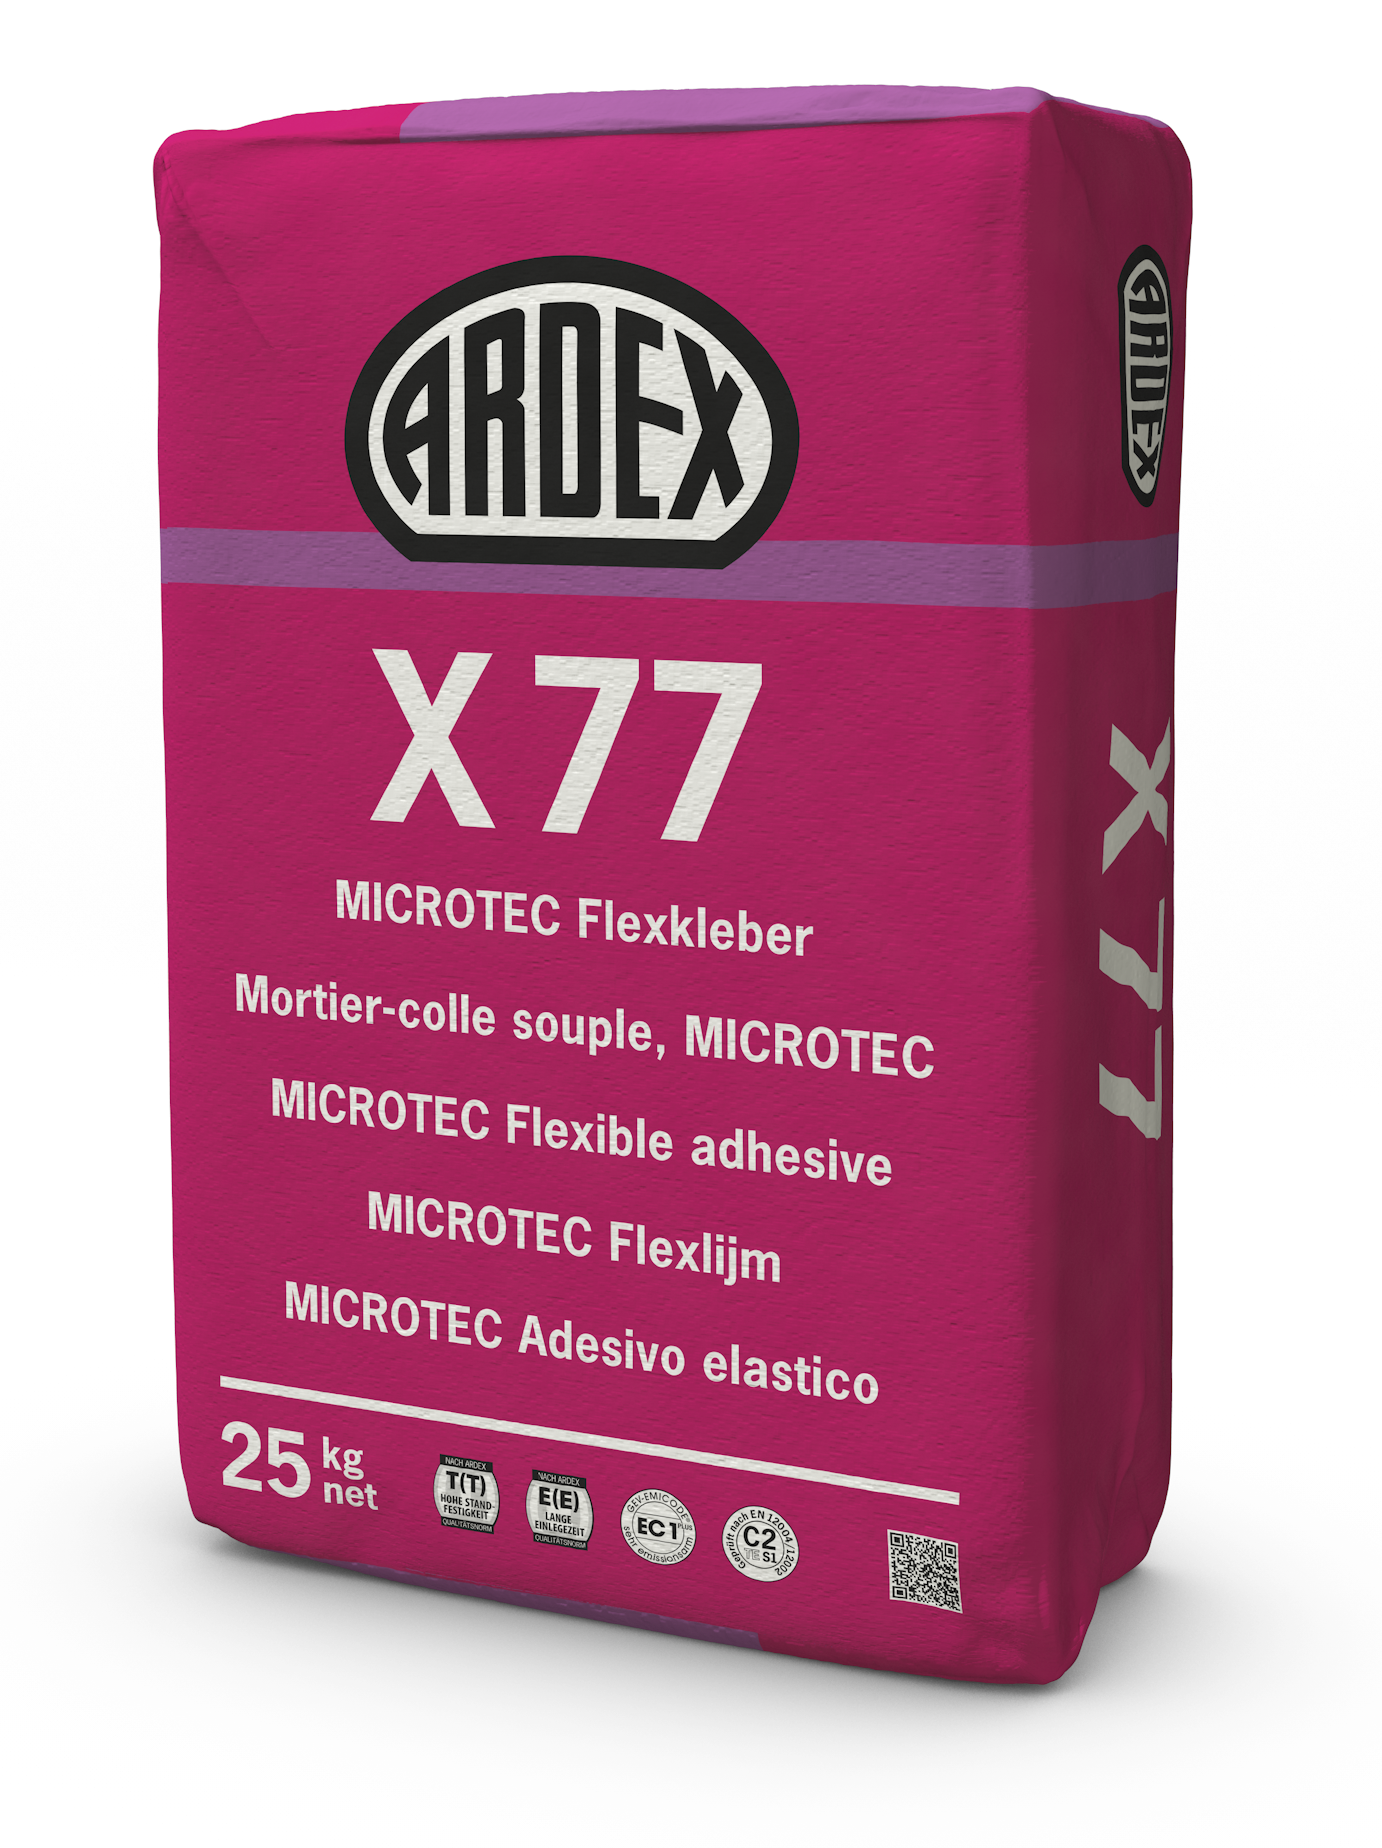 ARDEX X77 MICROTEC á 25 kg